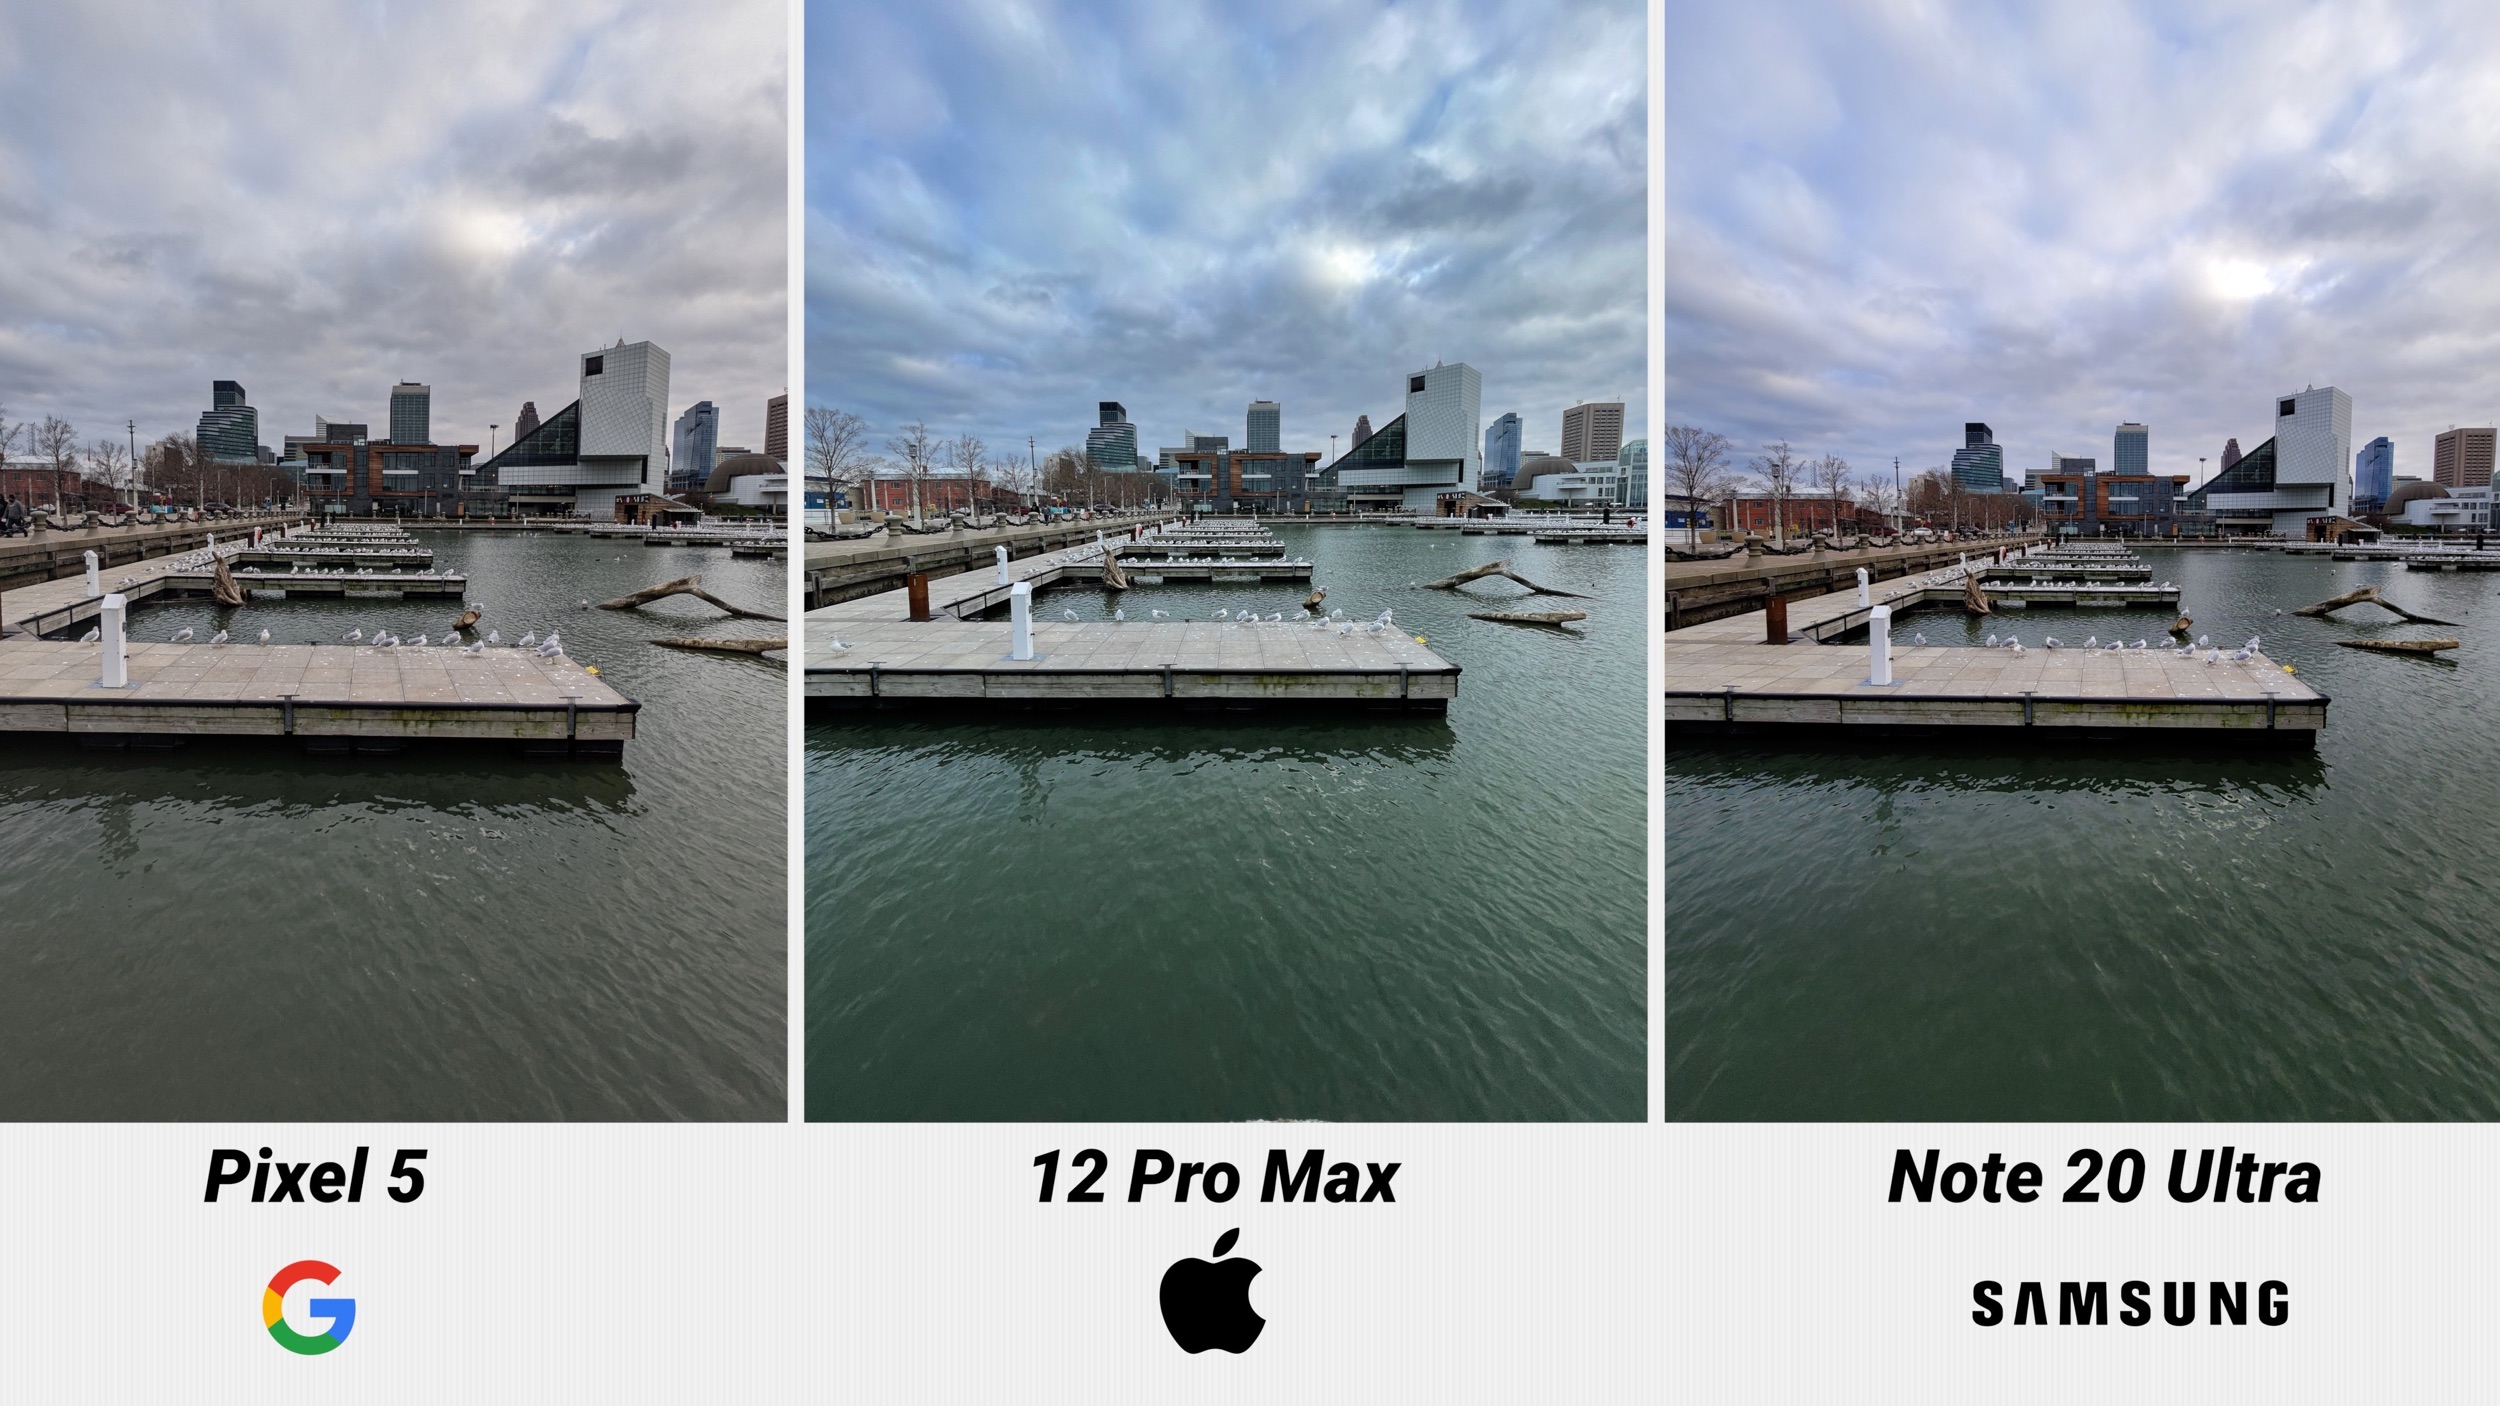 Сравнение фото iphone 13 pro и 14 pro